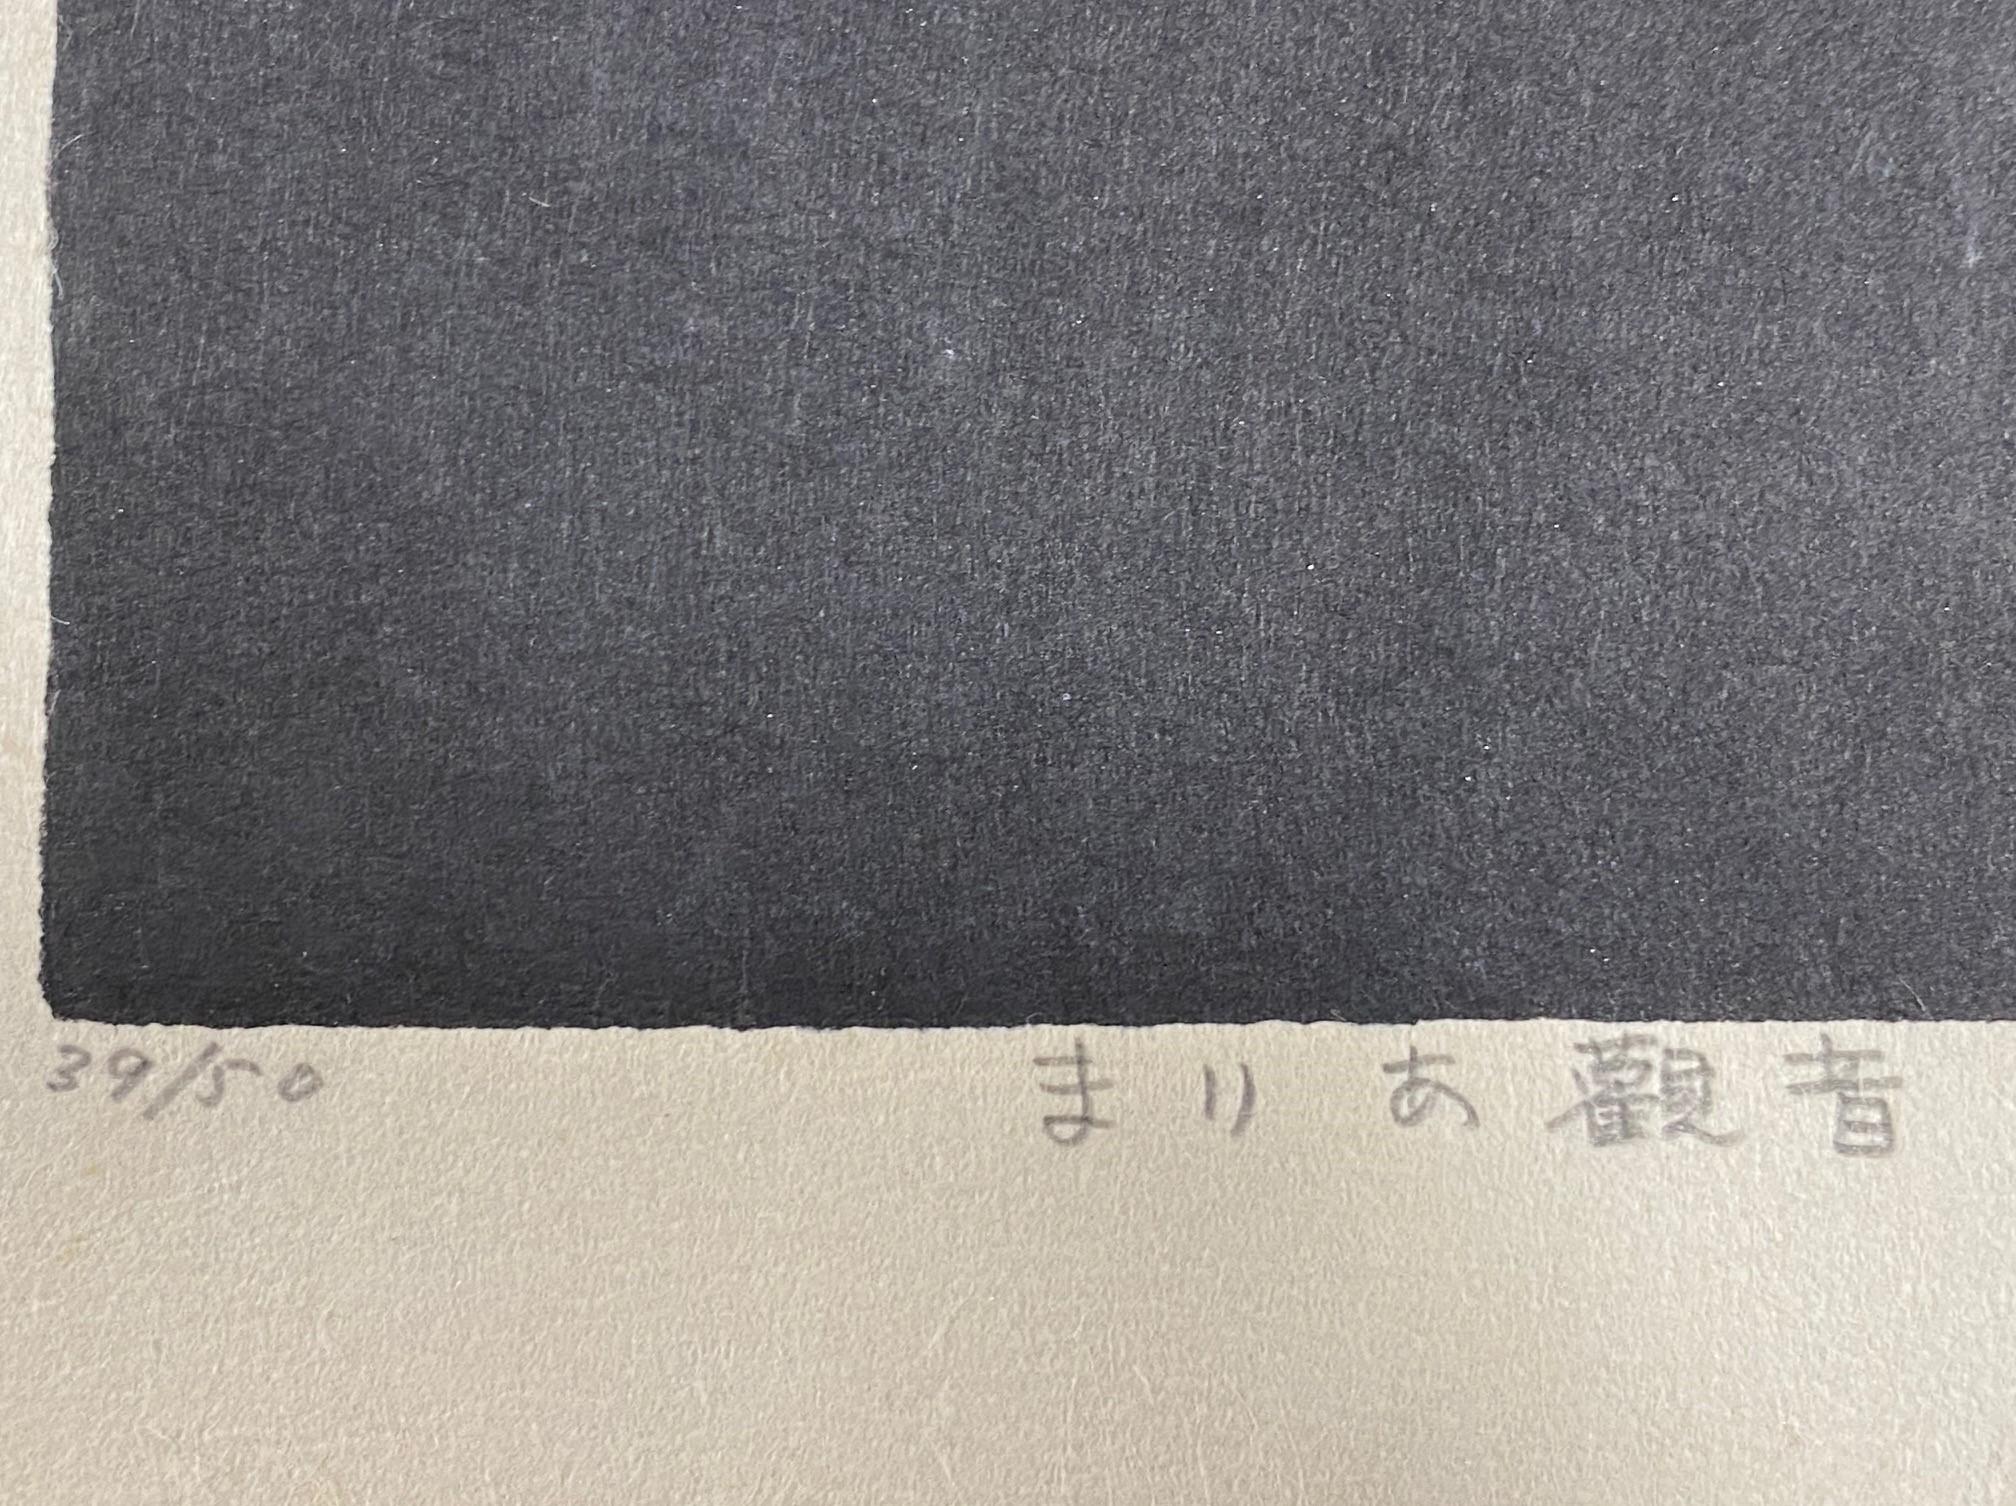 Kaoru Kawano Signed Rare Limited Edition Japanese Woodblock Print Maria Kwannon 4